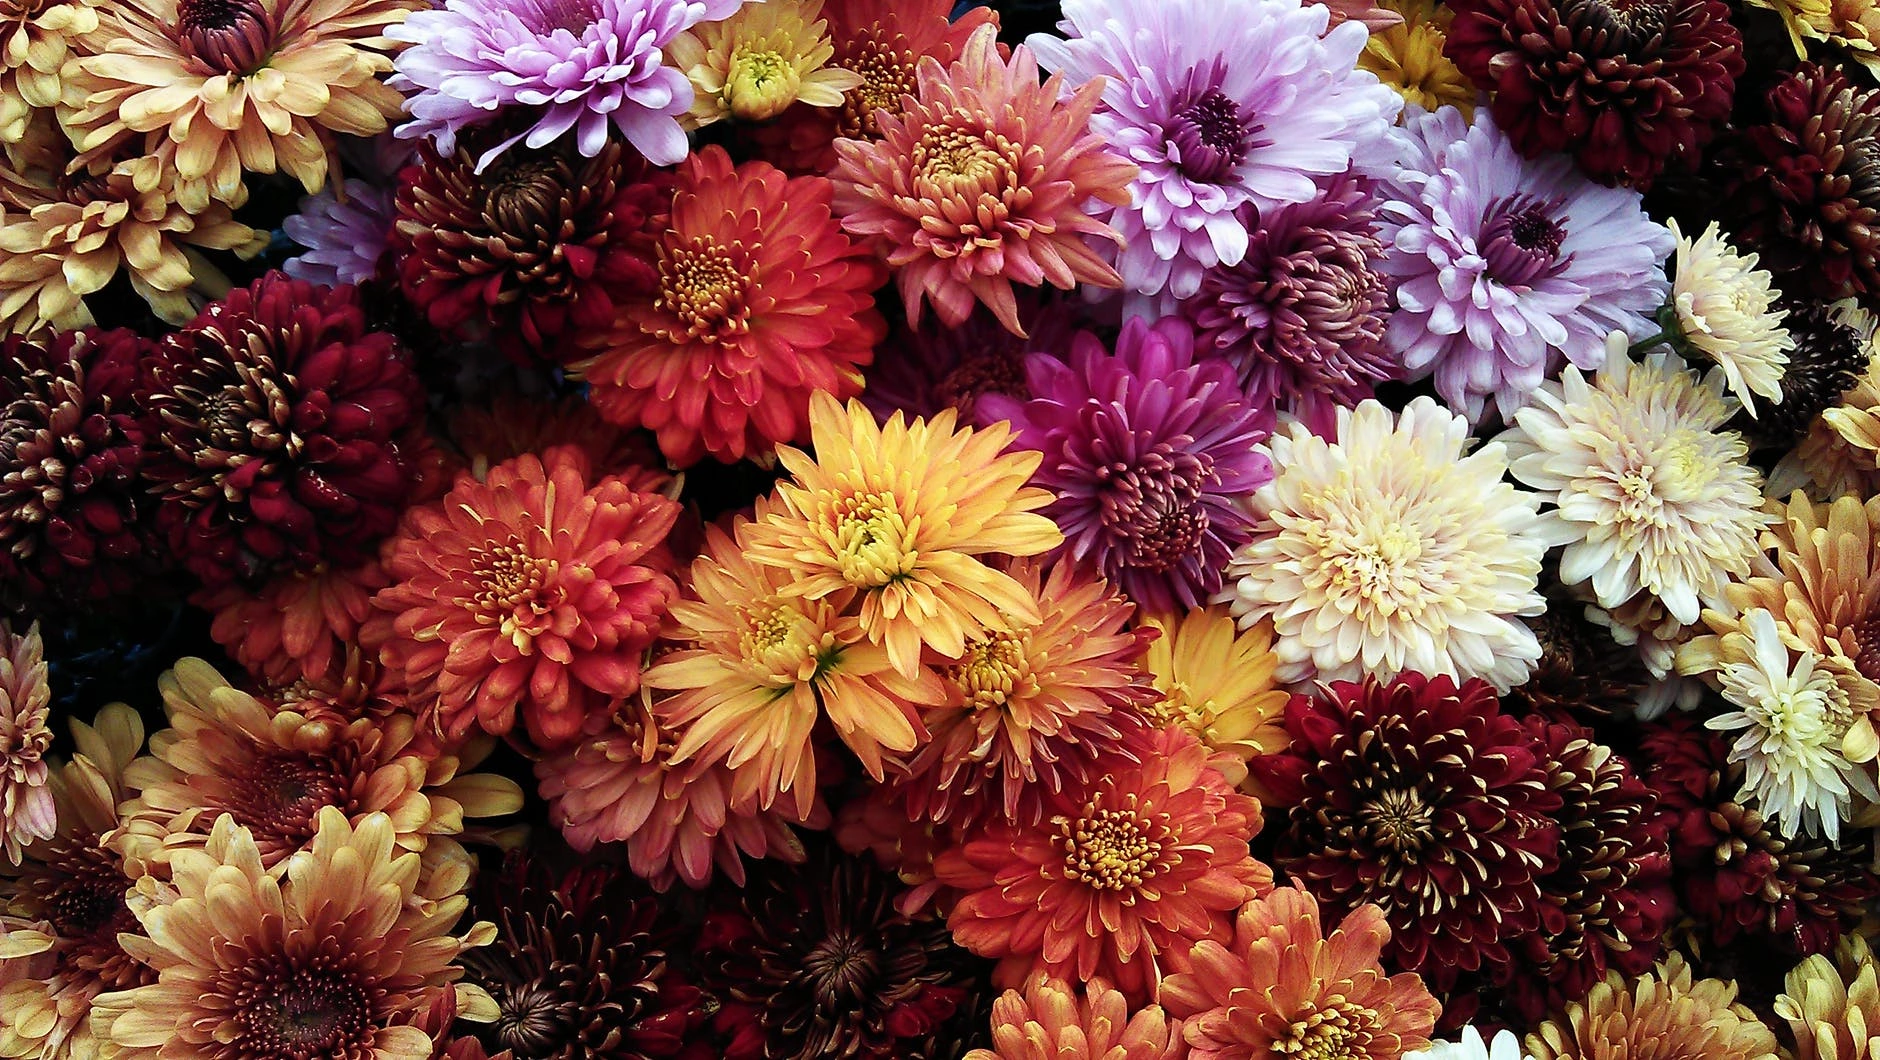 Les chrysanthèmes, une fleur emblématique de l'automne